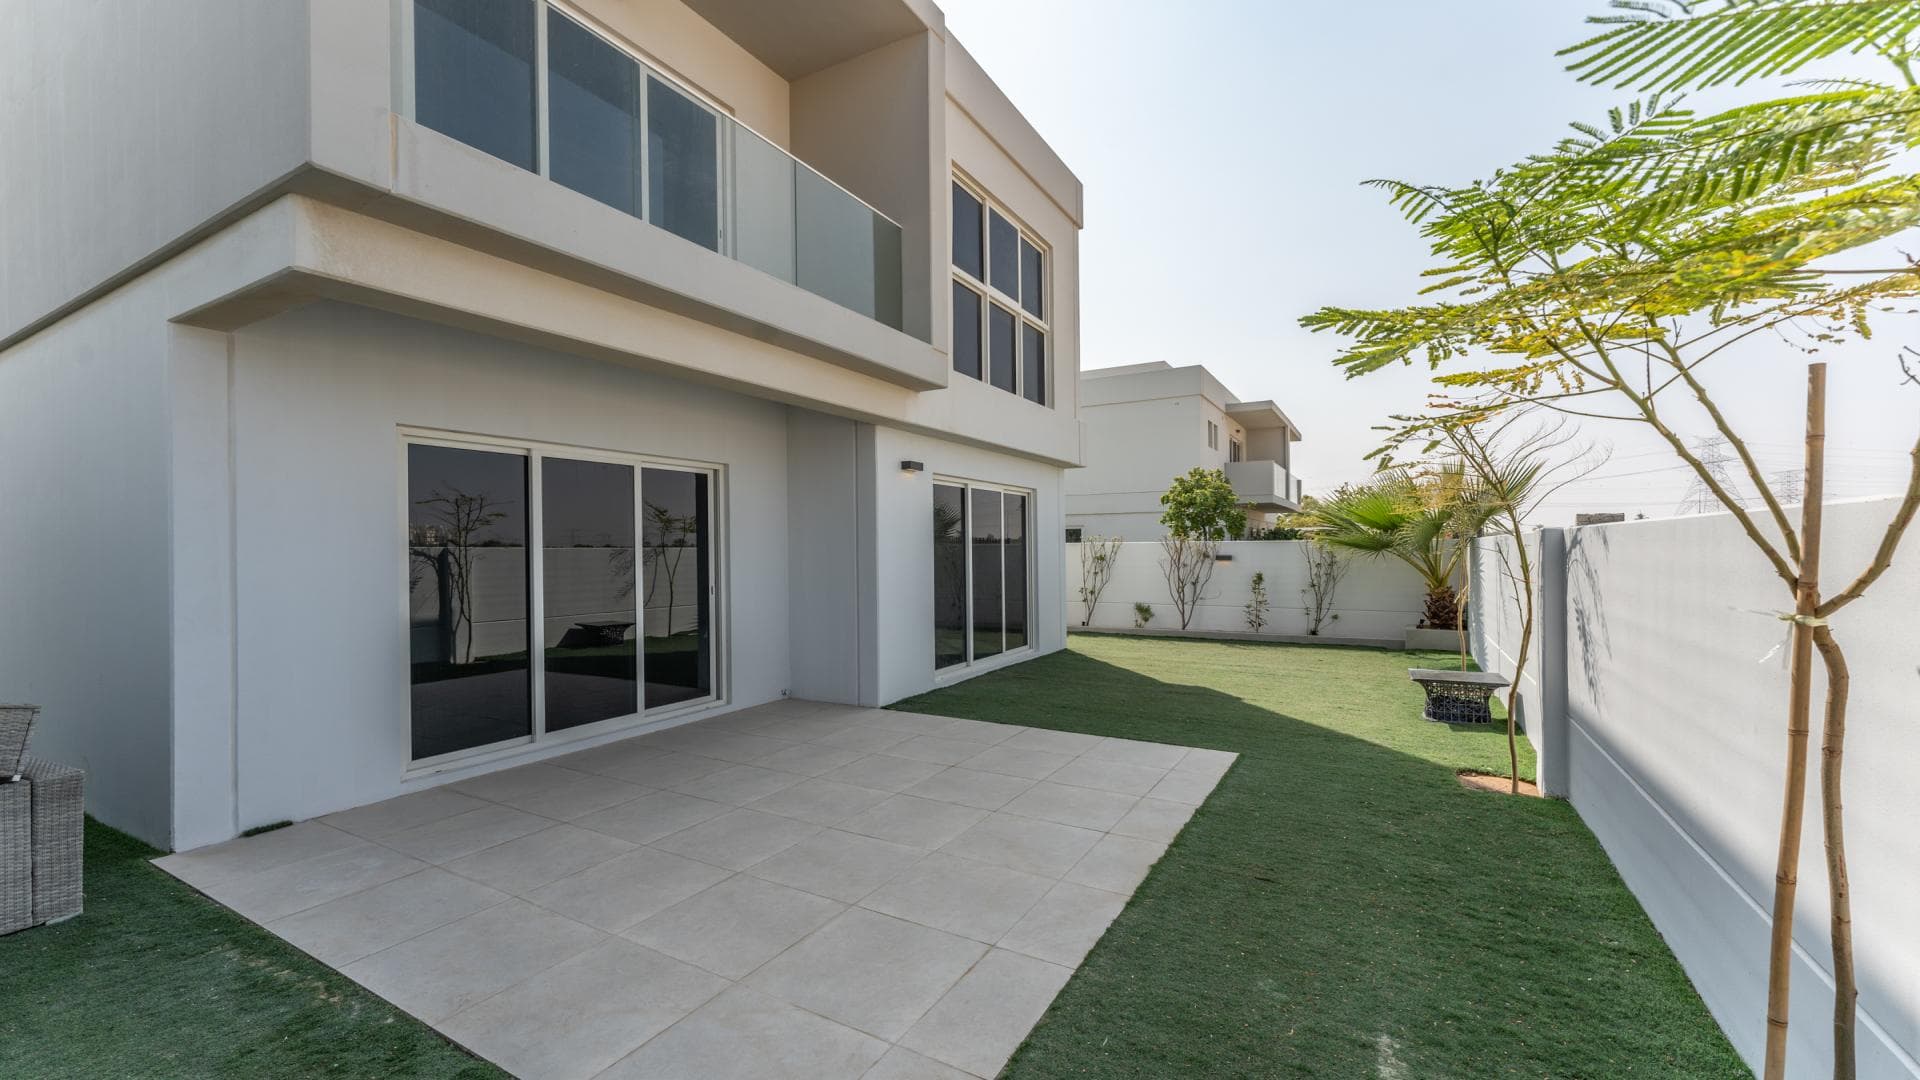 5 Bedroom Villa For Rent Al Kazim Tower 1 Lp17029 218c0863f73d8400.jpg